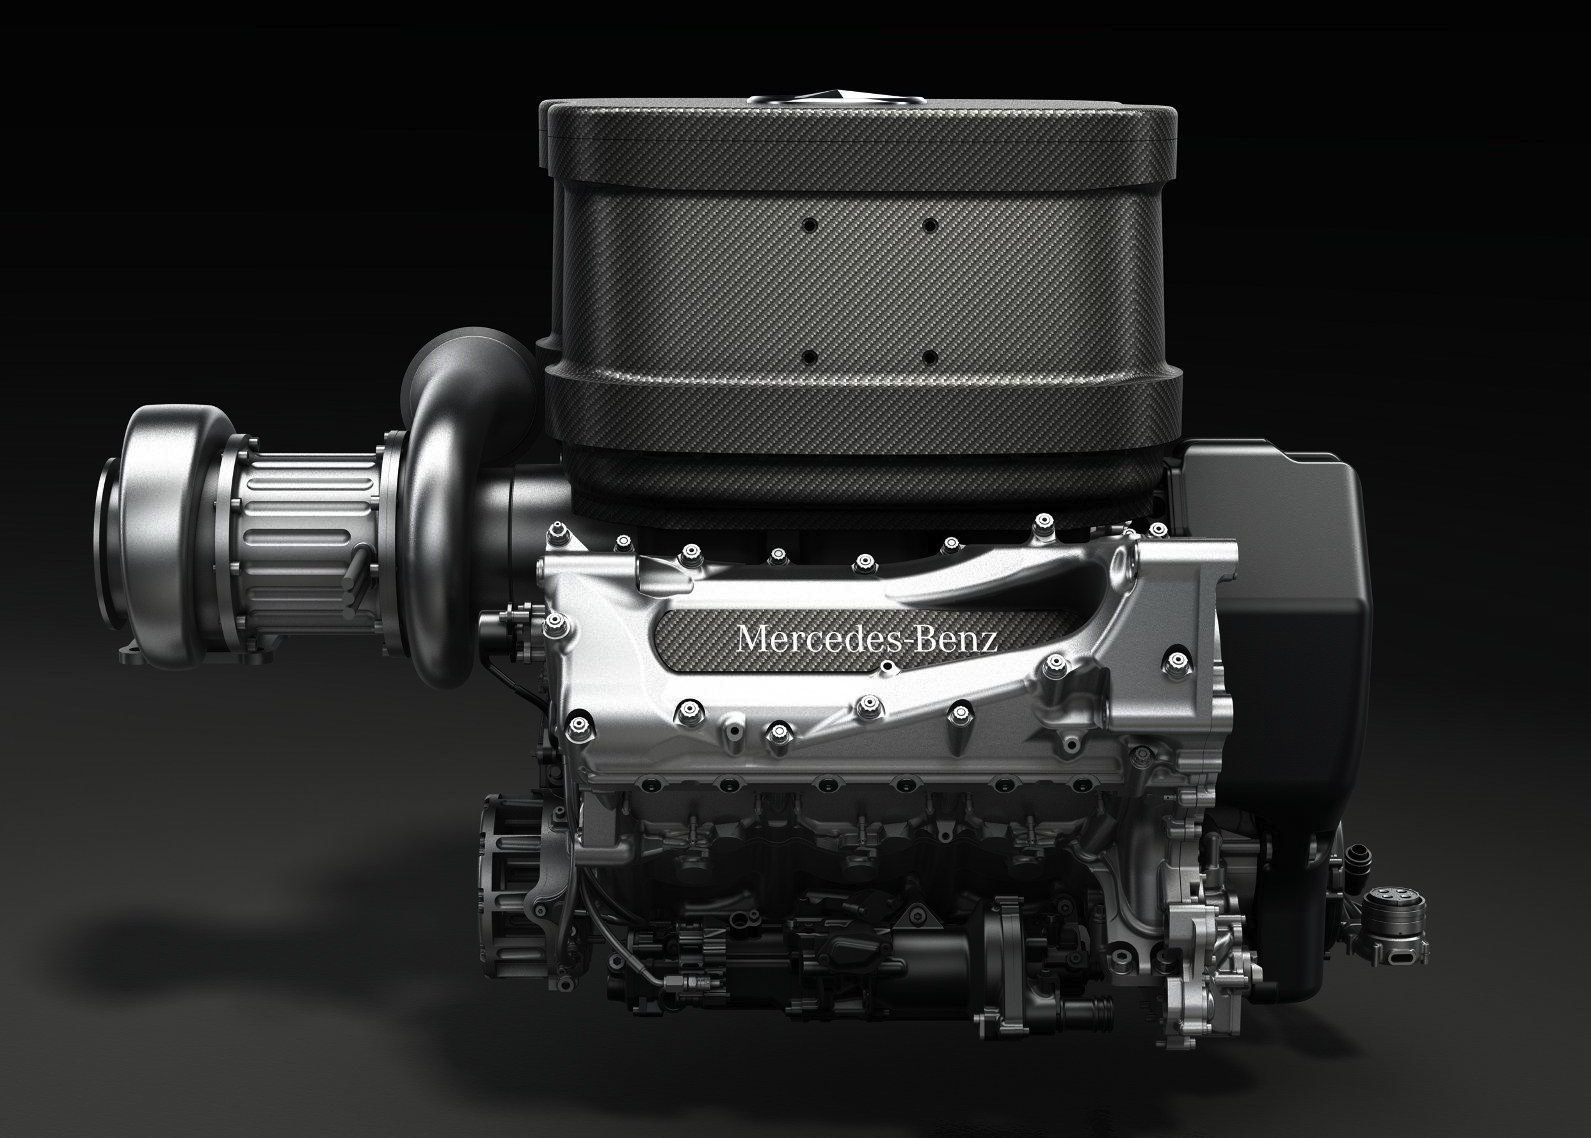 Video: 2014 Mercedes AMG Petronas 1.6 V6 F1 engine sound